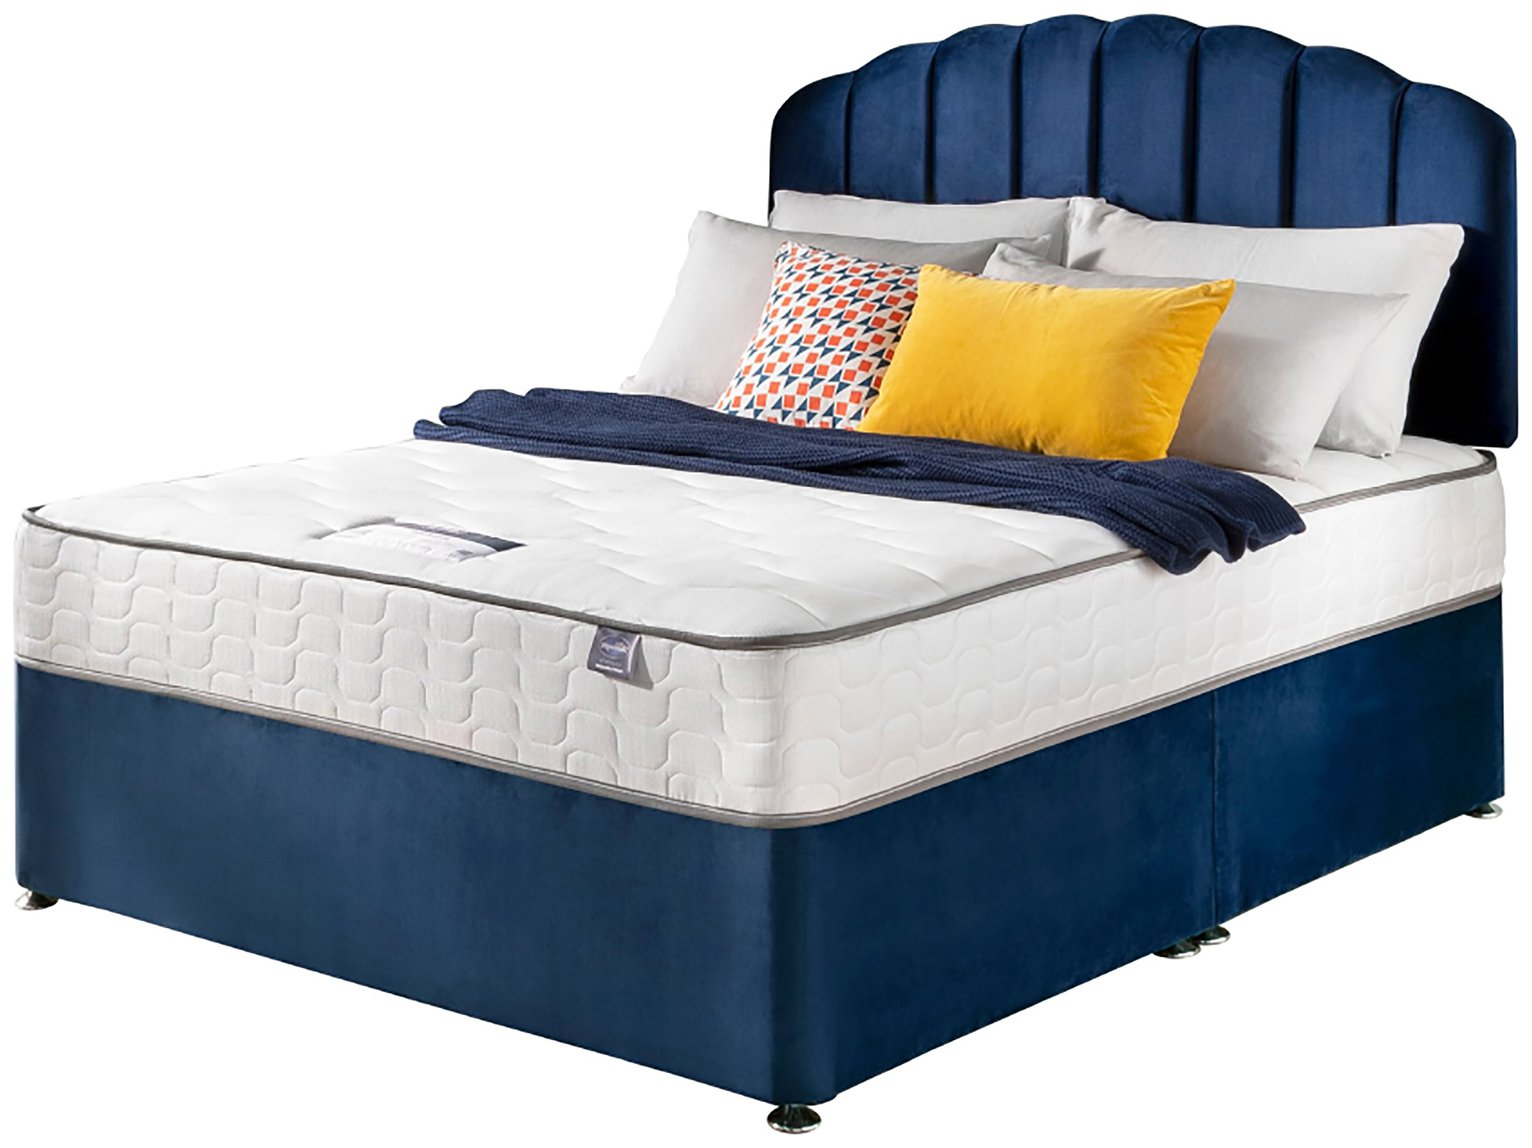 Silentnight Middleton Kingsize Comfort Divan Bed - Blue